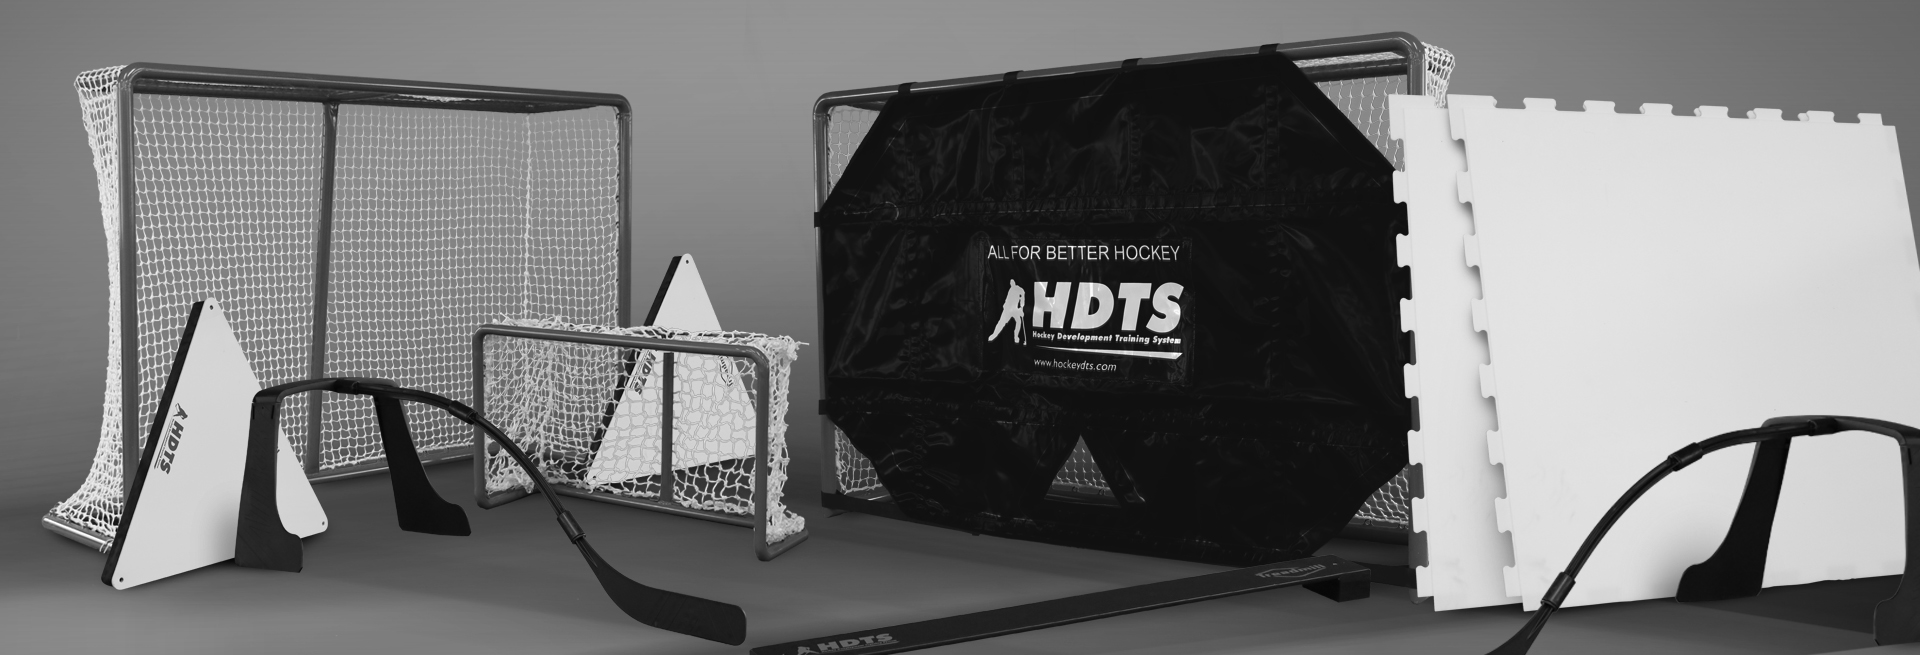 хоккейное тренировочное оборудование- синтетический лед, хоккейные ворота, пасеры